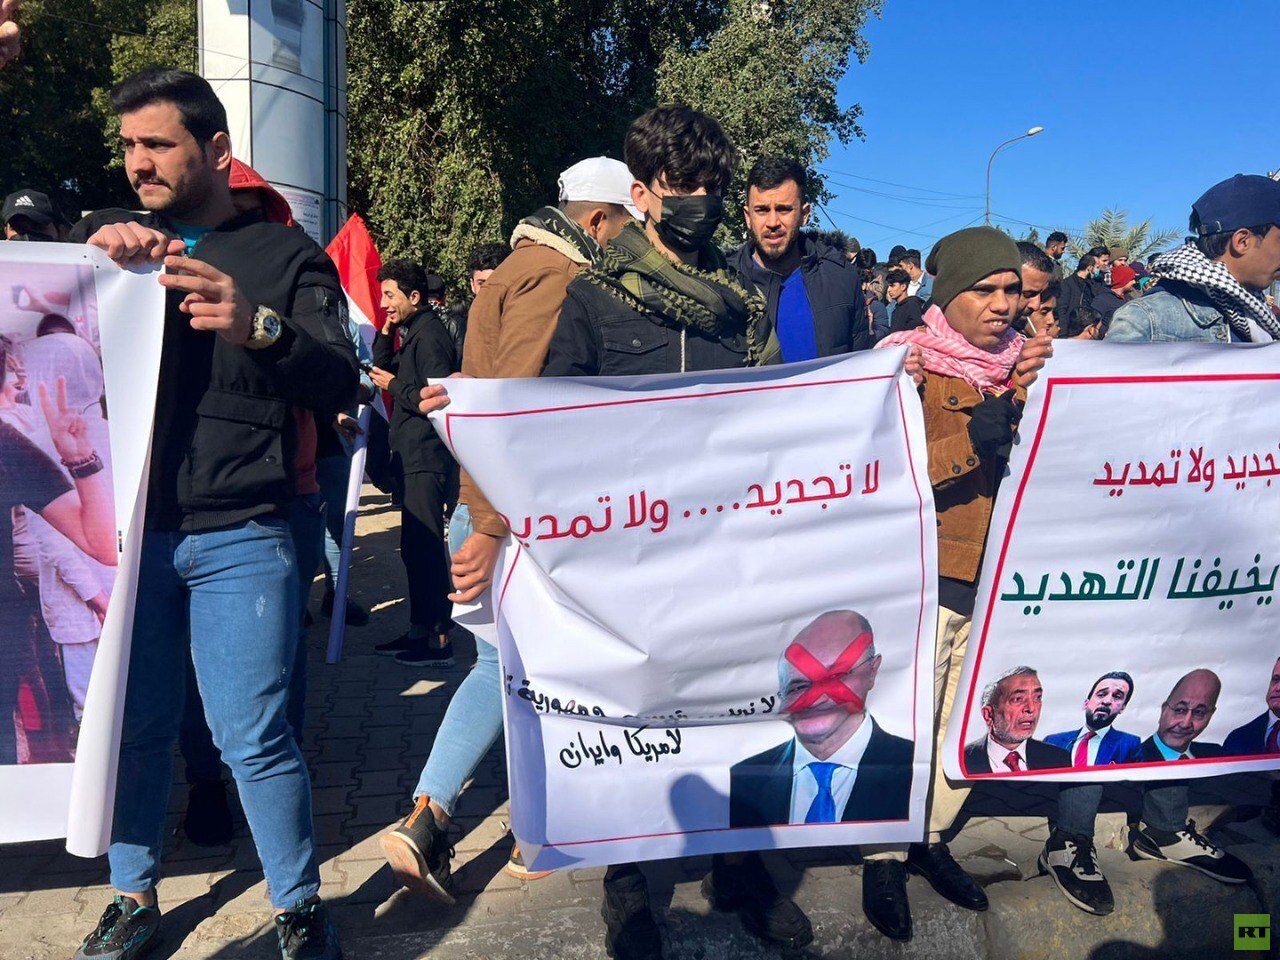 تظاهرة في بغداد تطالب بمحاكمة المالكي وترفض التجديد للرئاسات الثلاث (صور)